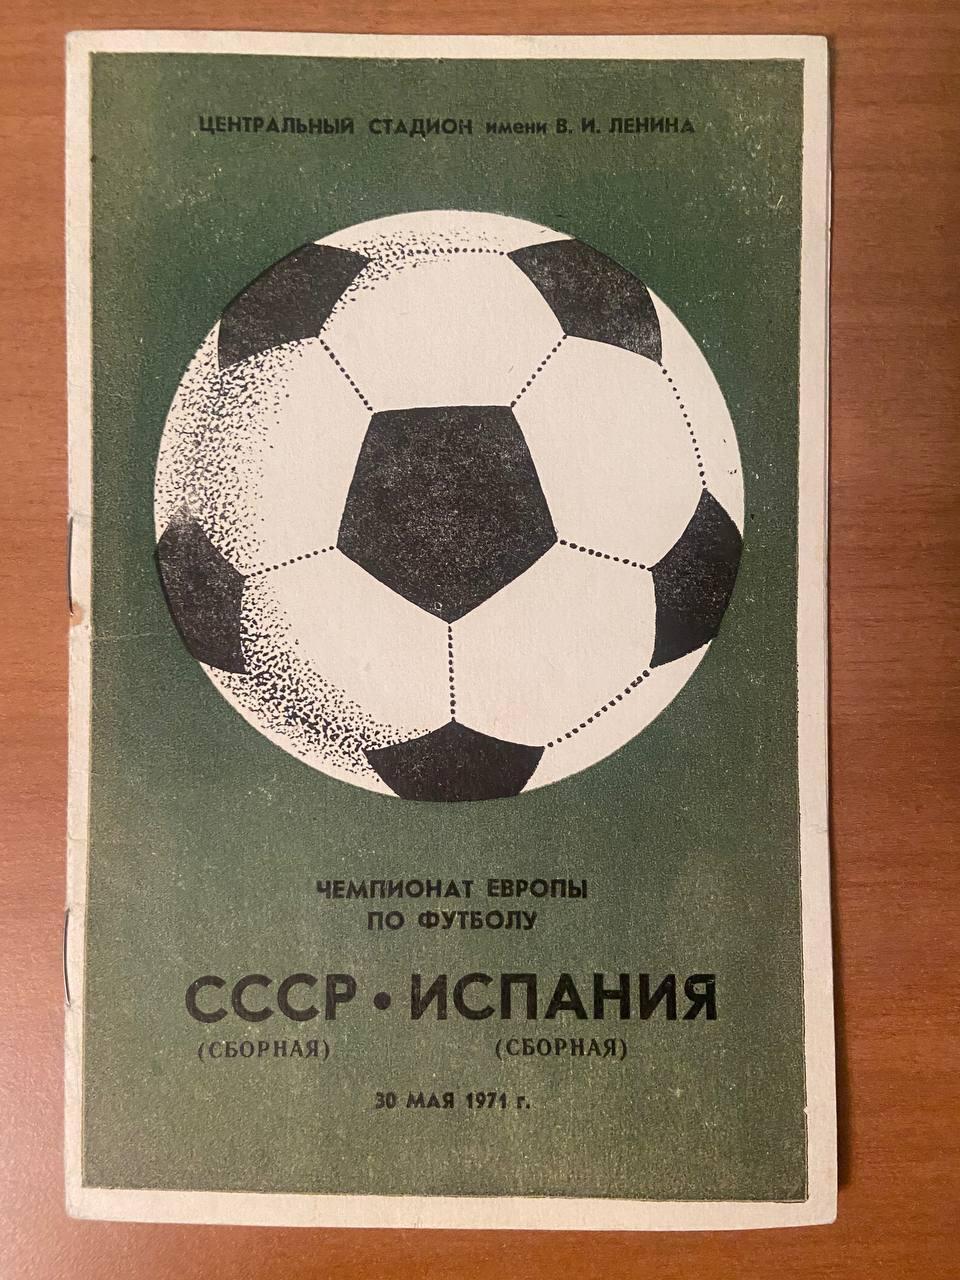 СССР (сборная) – Испания (сборная), 30.05.1971 г., Чемпионат Европы